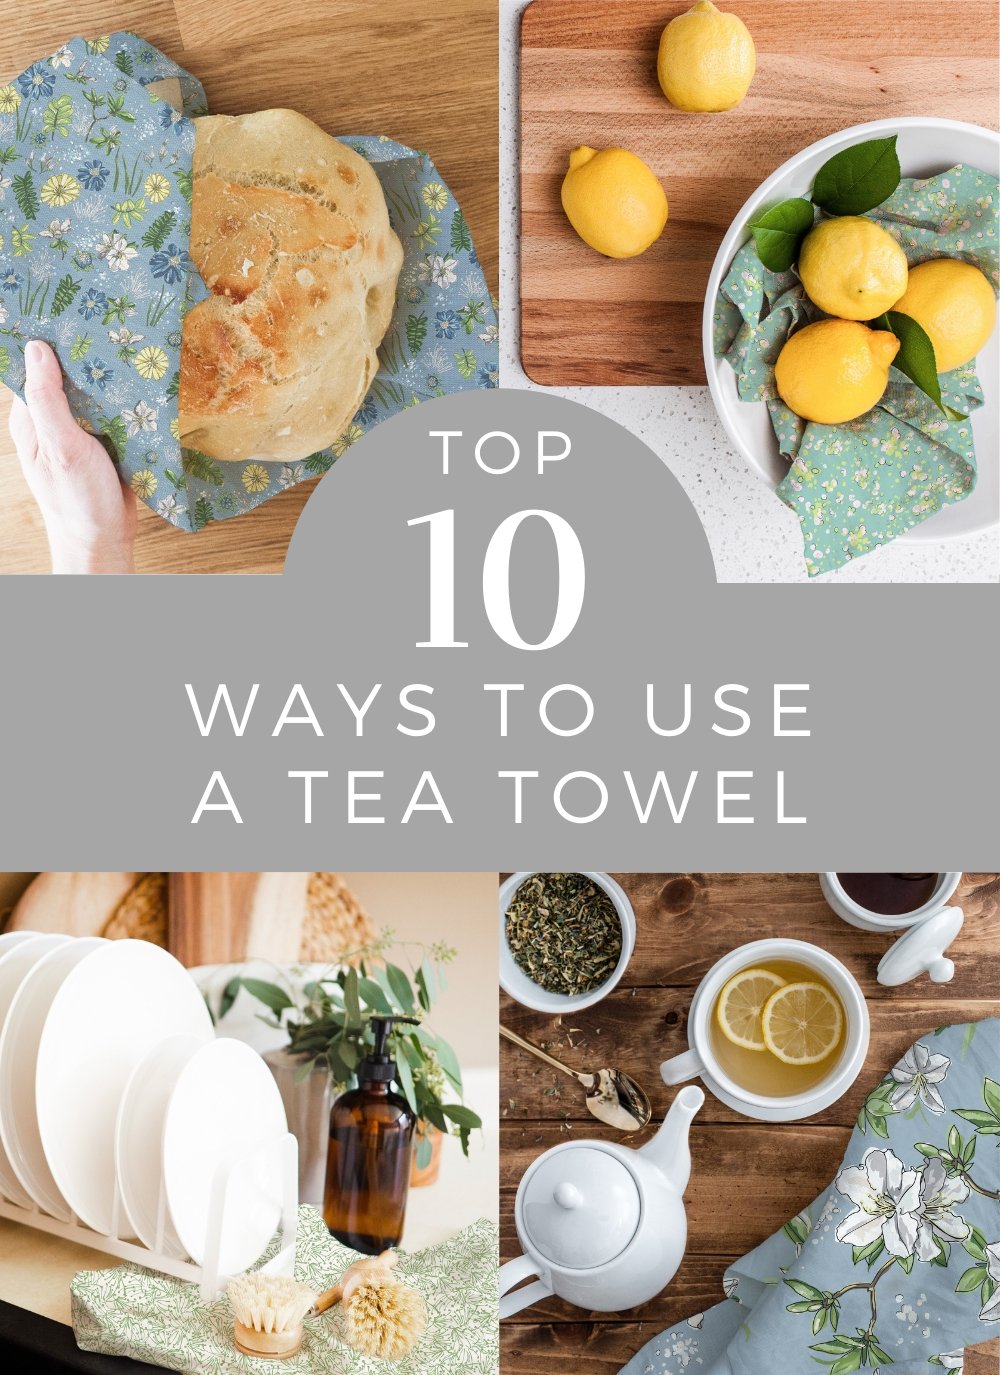 https://melissacolson.com/cdn/shop/articles/top-10-ways-to-use-a-tea-towel-901103_1000x.jpg?v=1664444221